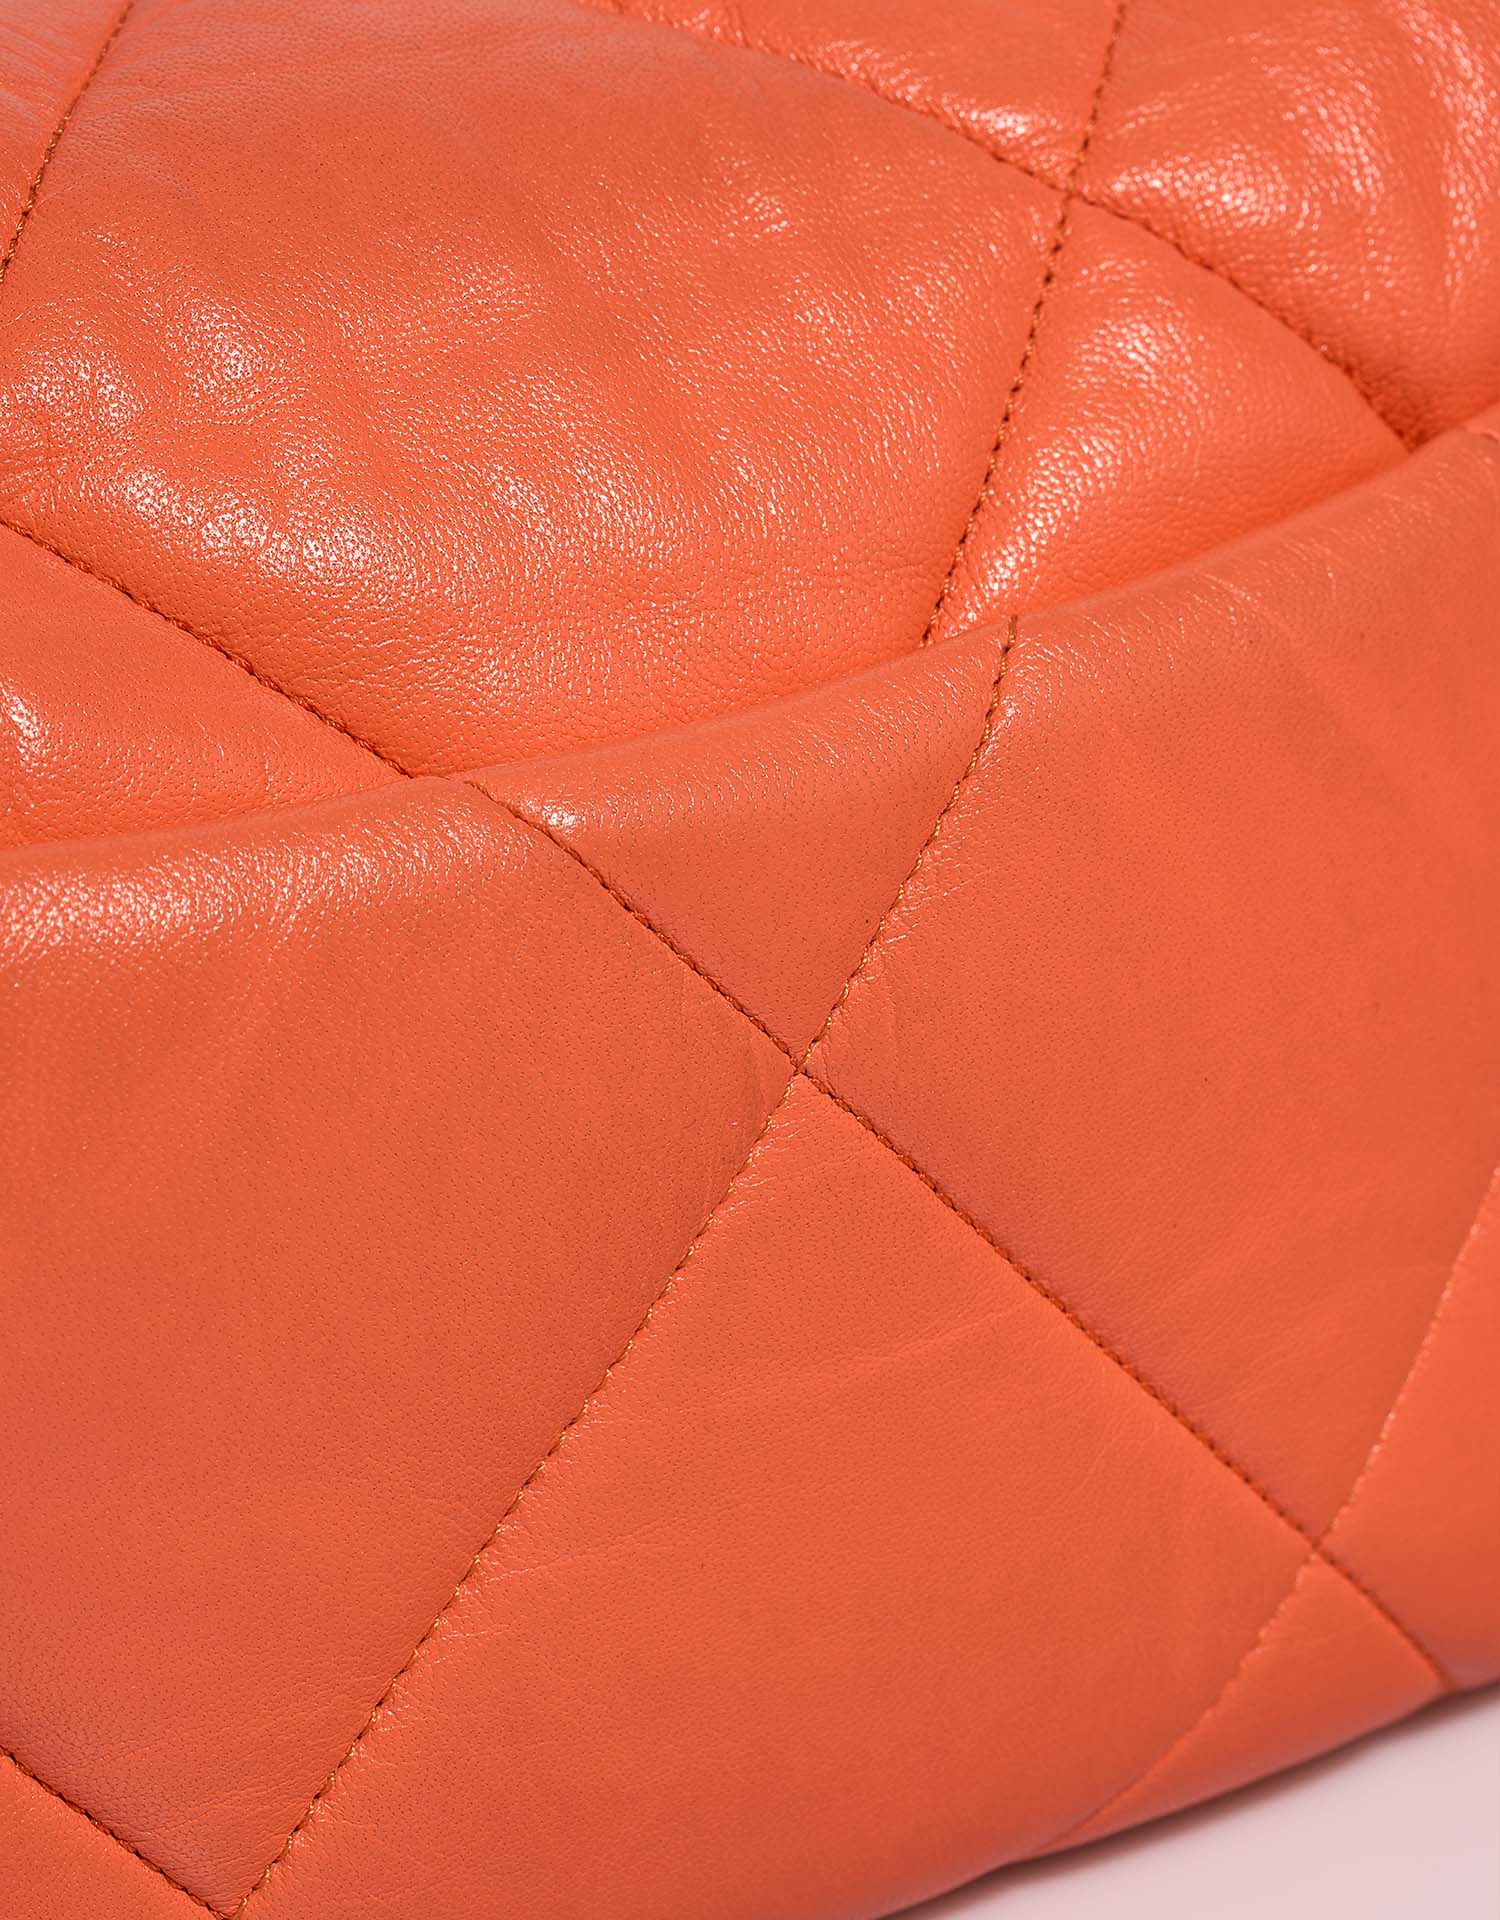 Chanel 19 FlapBag Orange Gebrauchsspuren | Verkaufen Sie Ihre Designer-Tasche auf Saclab.com